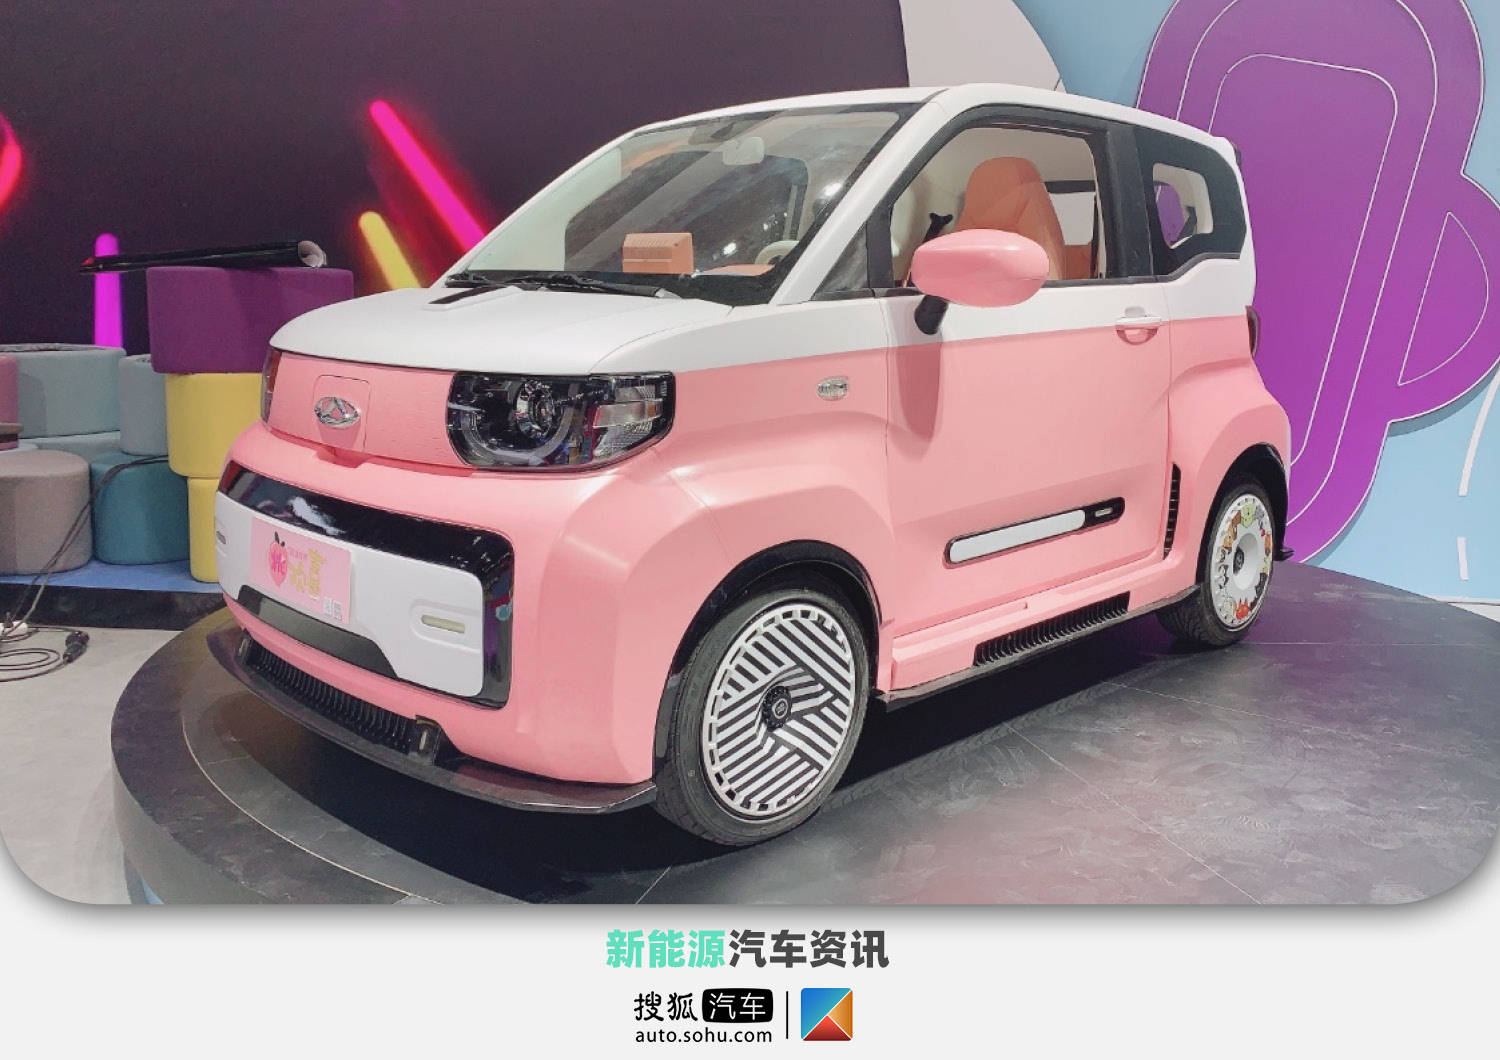 2021成都车展探馆:奇瑞qq冰淇淋两款特别版车型亮相